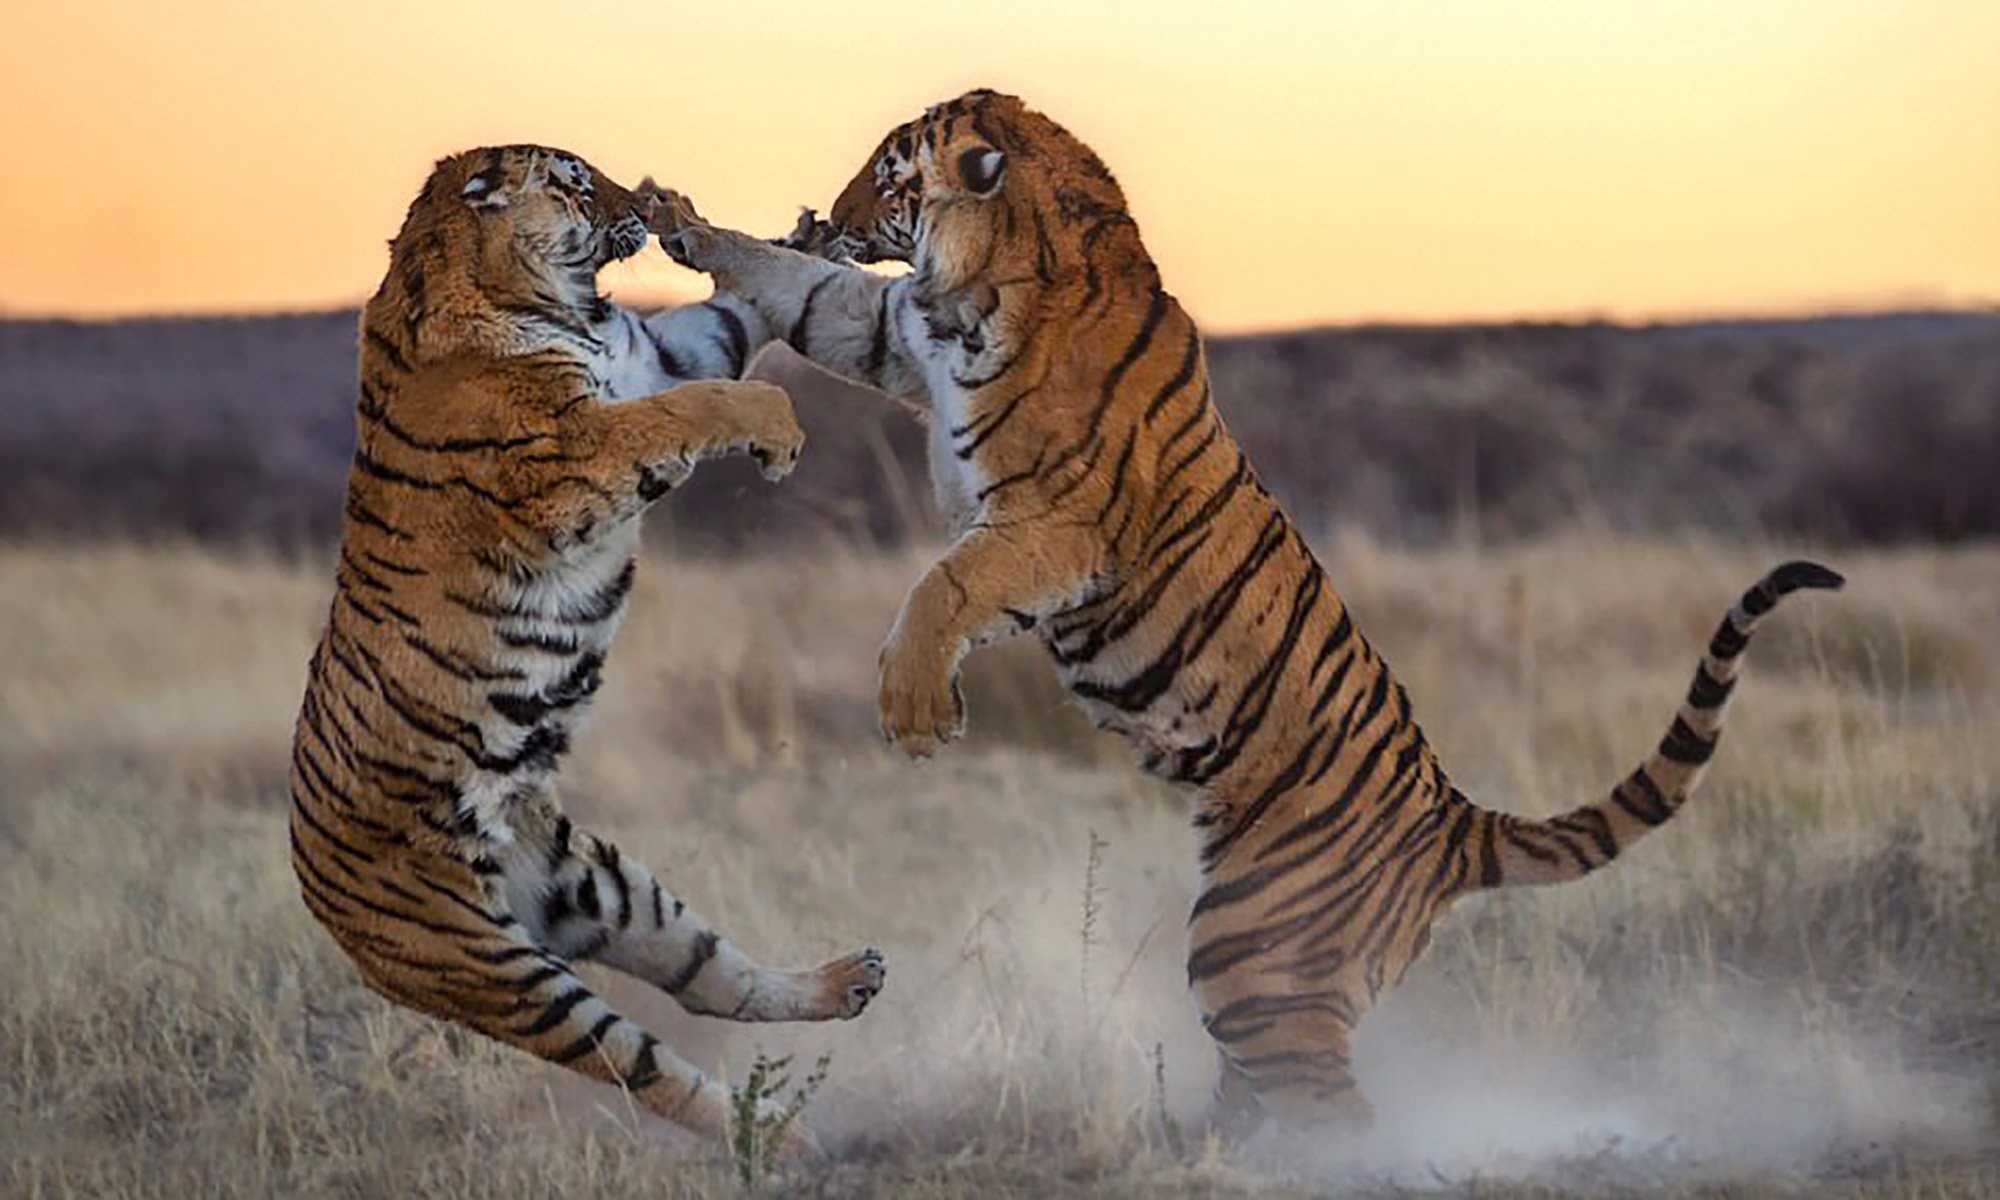 Движение первых дикая природа. Амурские тигры дерутся. Животные дерутся. Тигр драка. Агрессия животные.